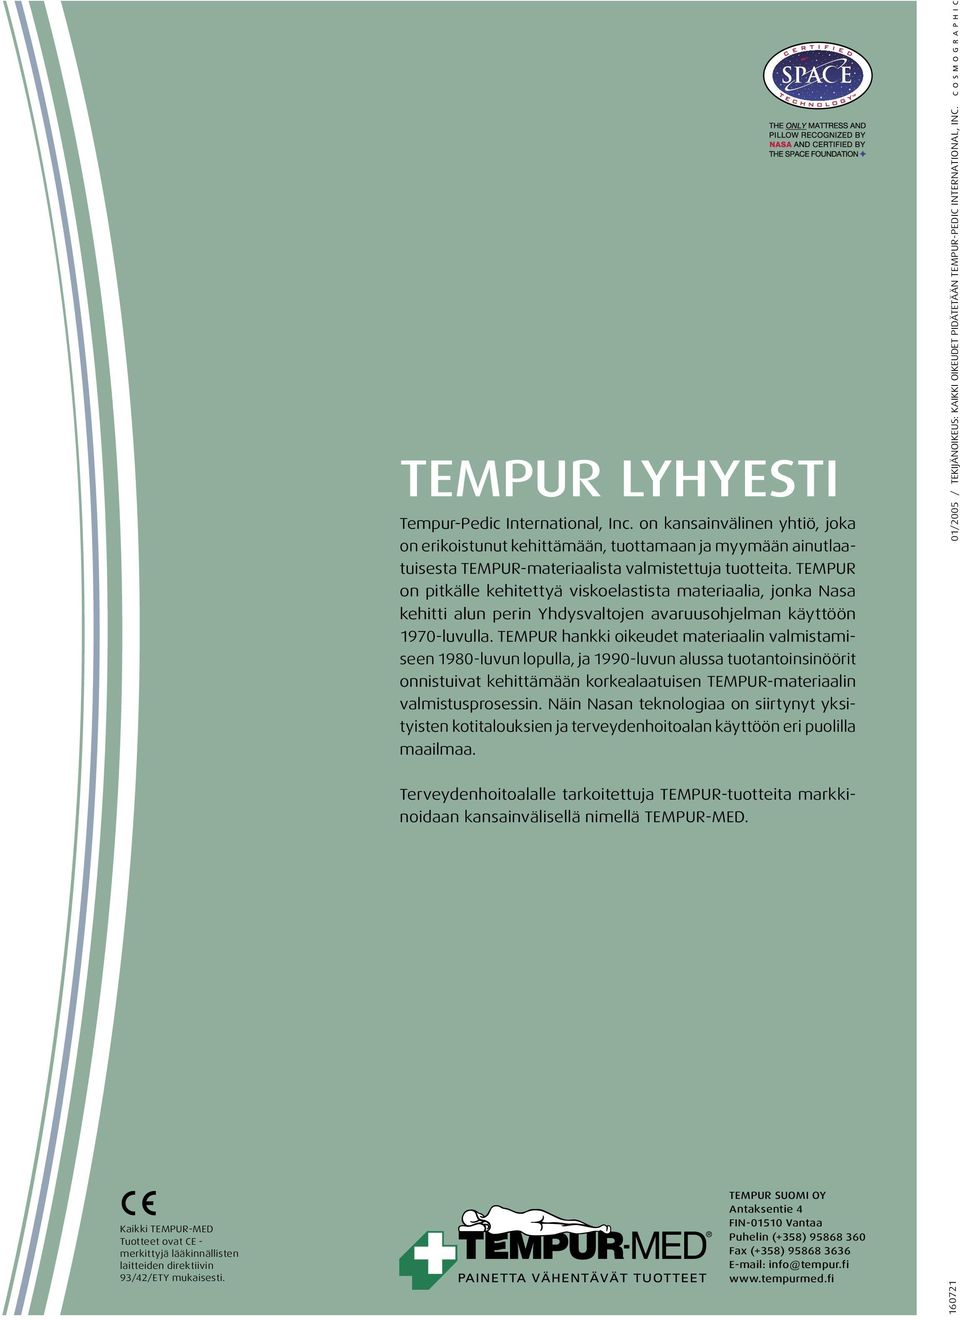 TEMPUR hankki oikeudet materiaalin valmistamiseen 1980-luvun lopulla, ja 1990-luvun alussa tuotantoinsinöörit onnistuivat kehittämään korkealaatuisen TEMPUR-materiaalin valmistusprosessin.